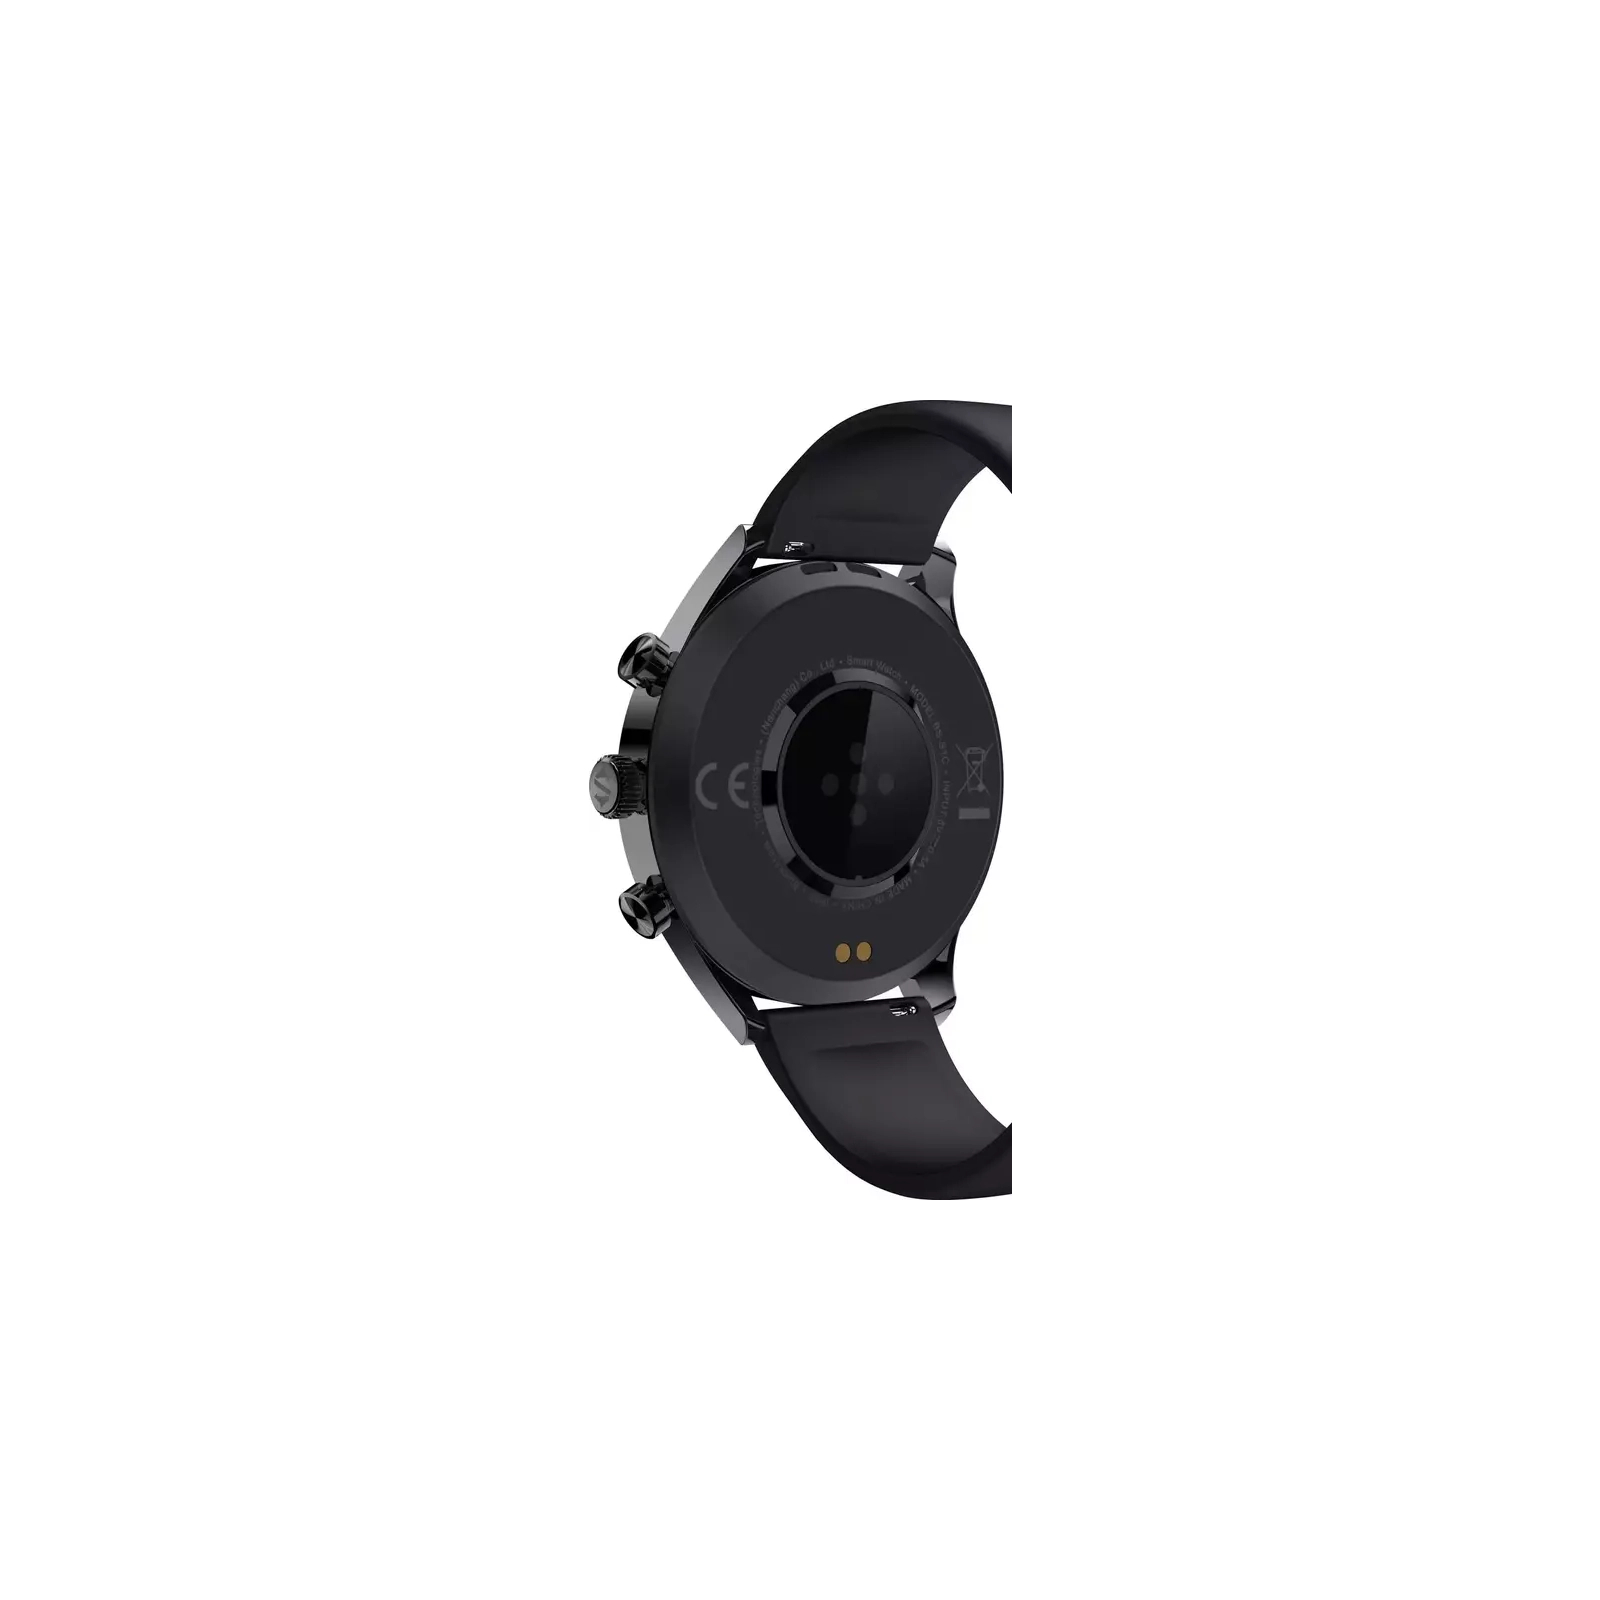 Смарт-часы Black Shark S1 CLASSIC - Silver изображение 10